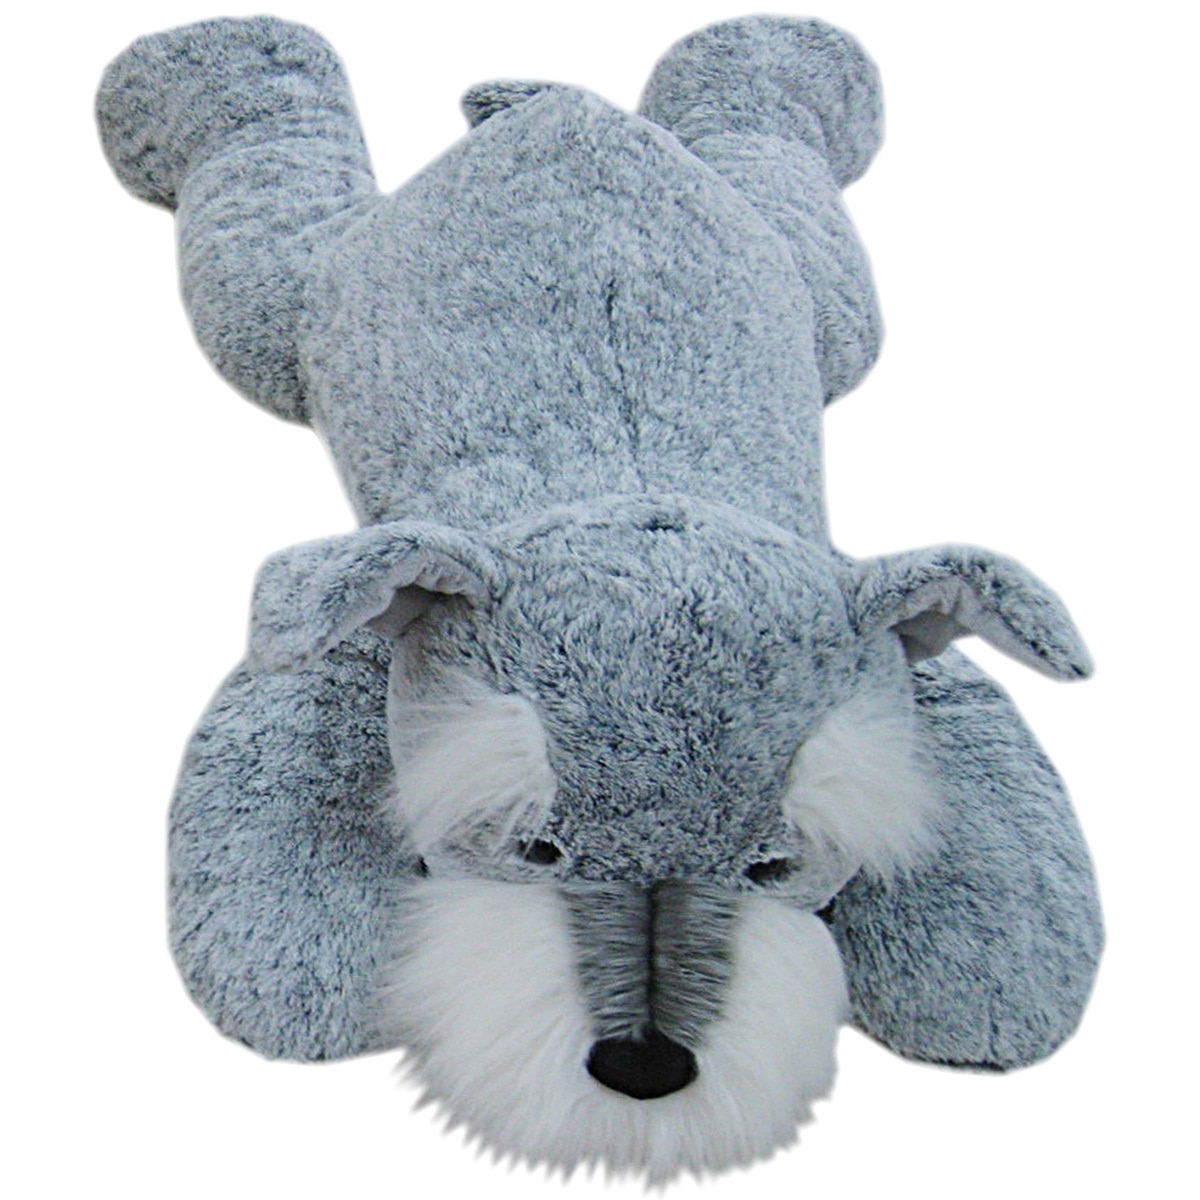 hugfun koala